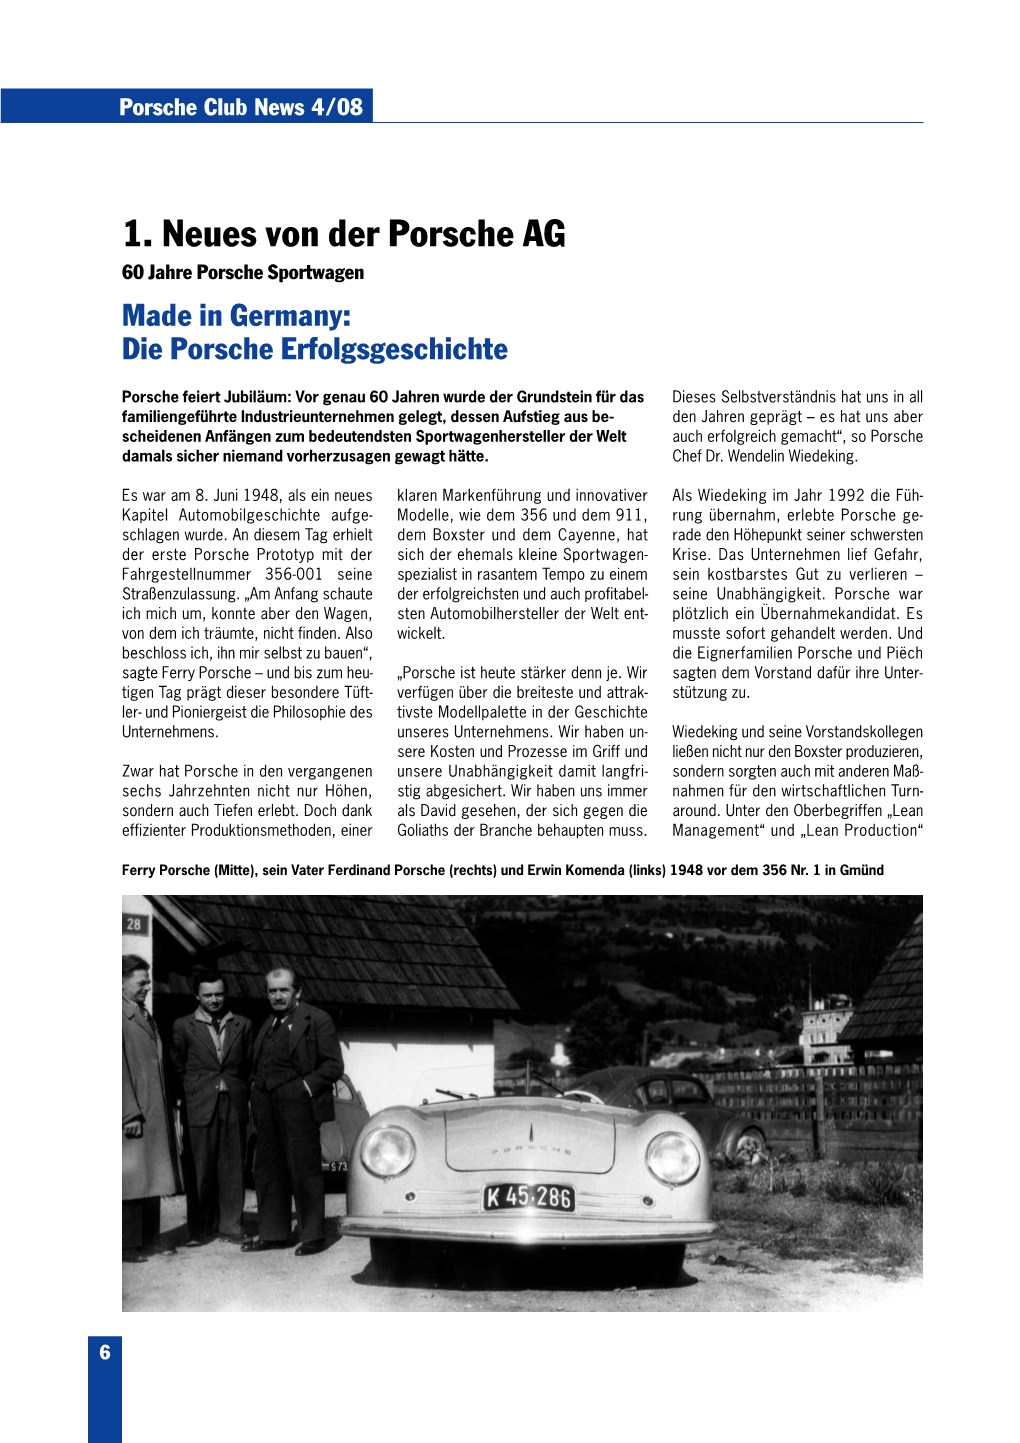 1. Neues Von Der Porsche AG 60 Jahre Porsche Sportwagen Made in Germany: Die Porsche Erfolgsgeschichte